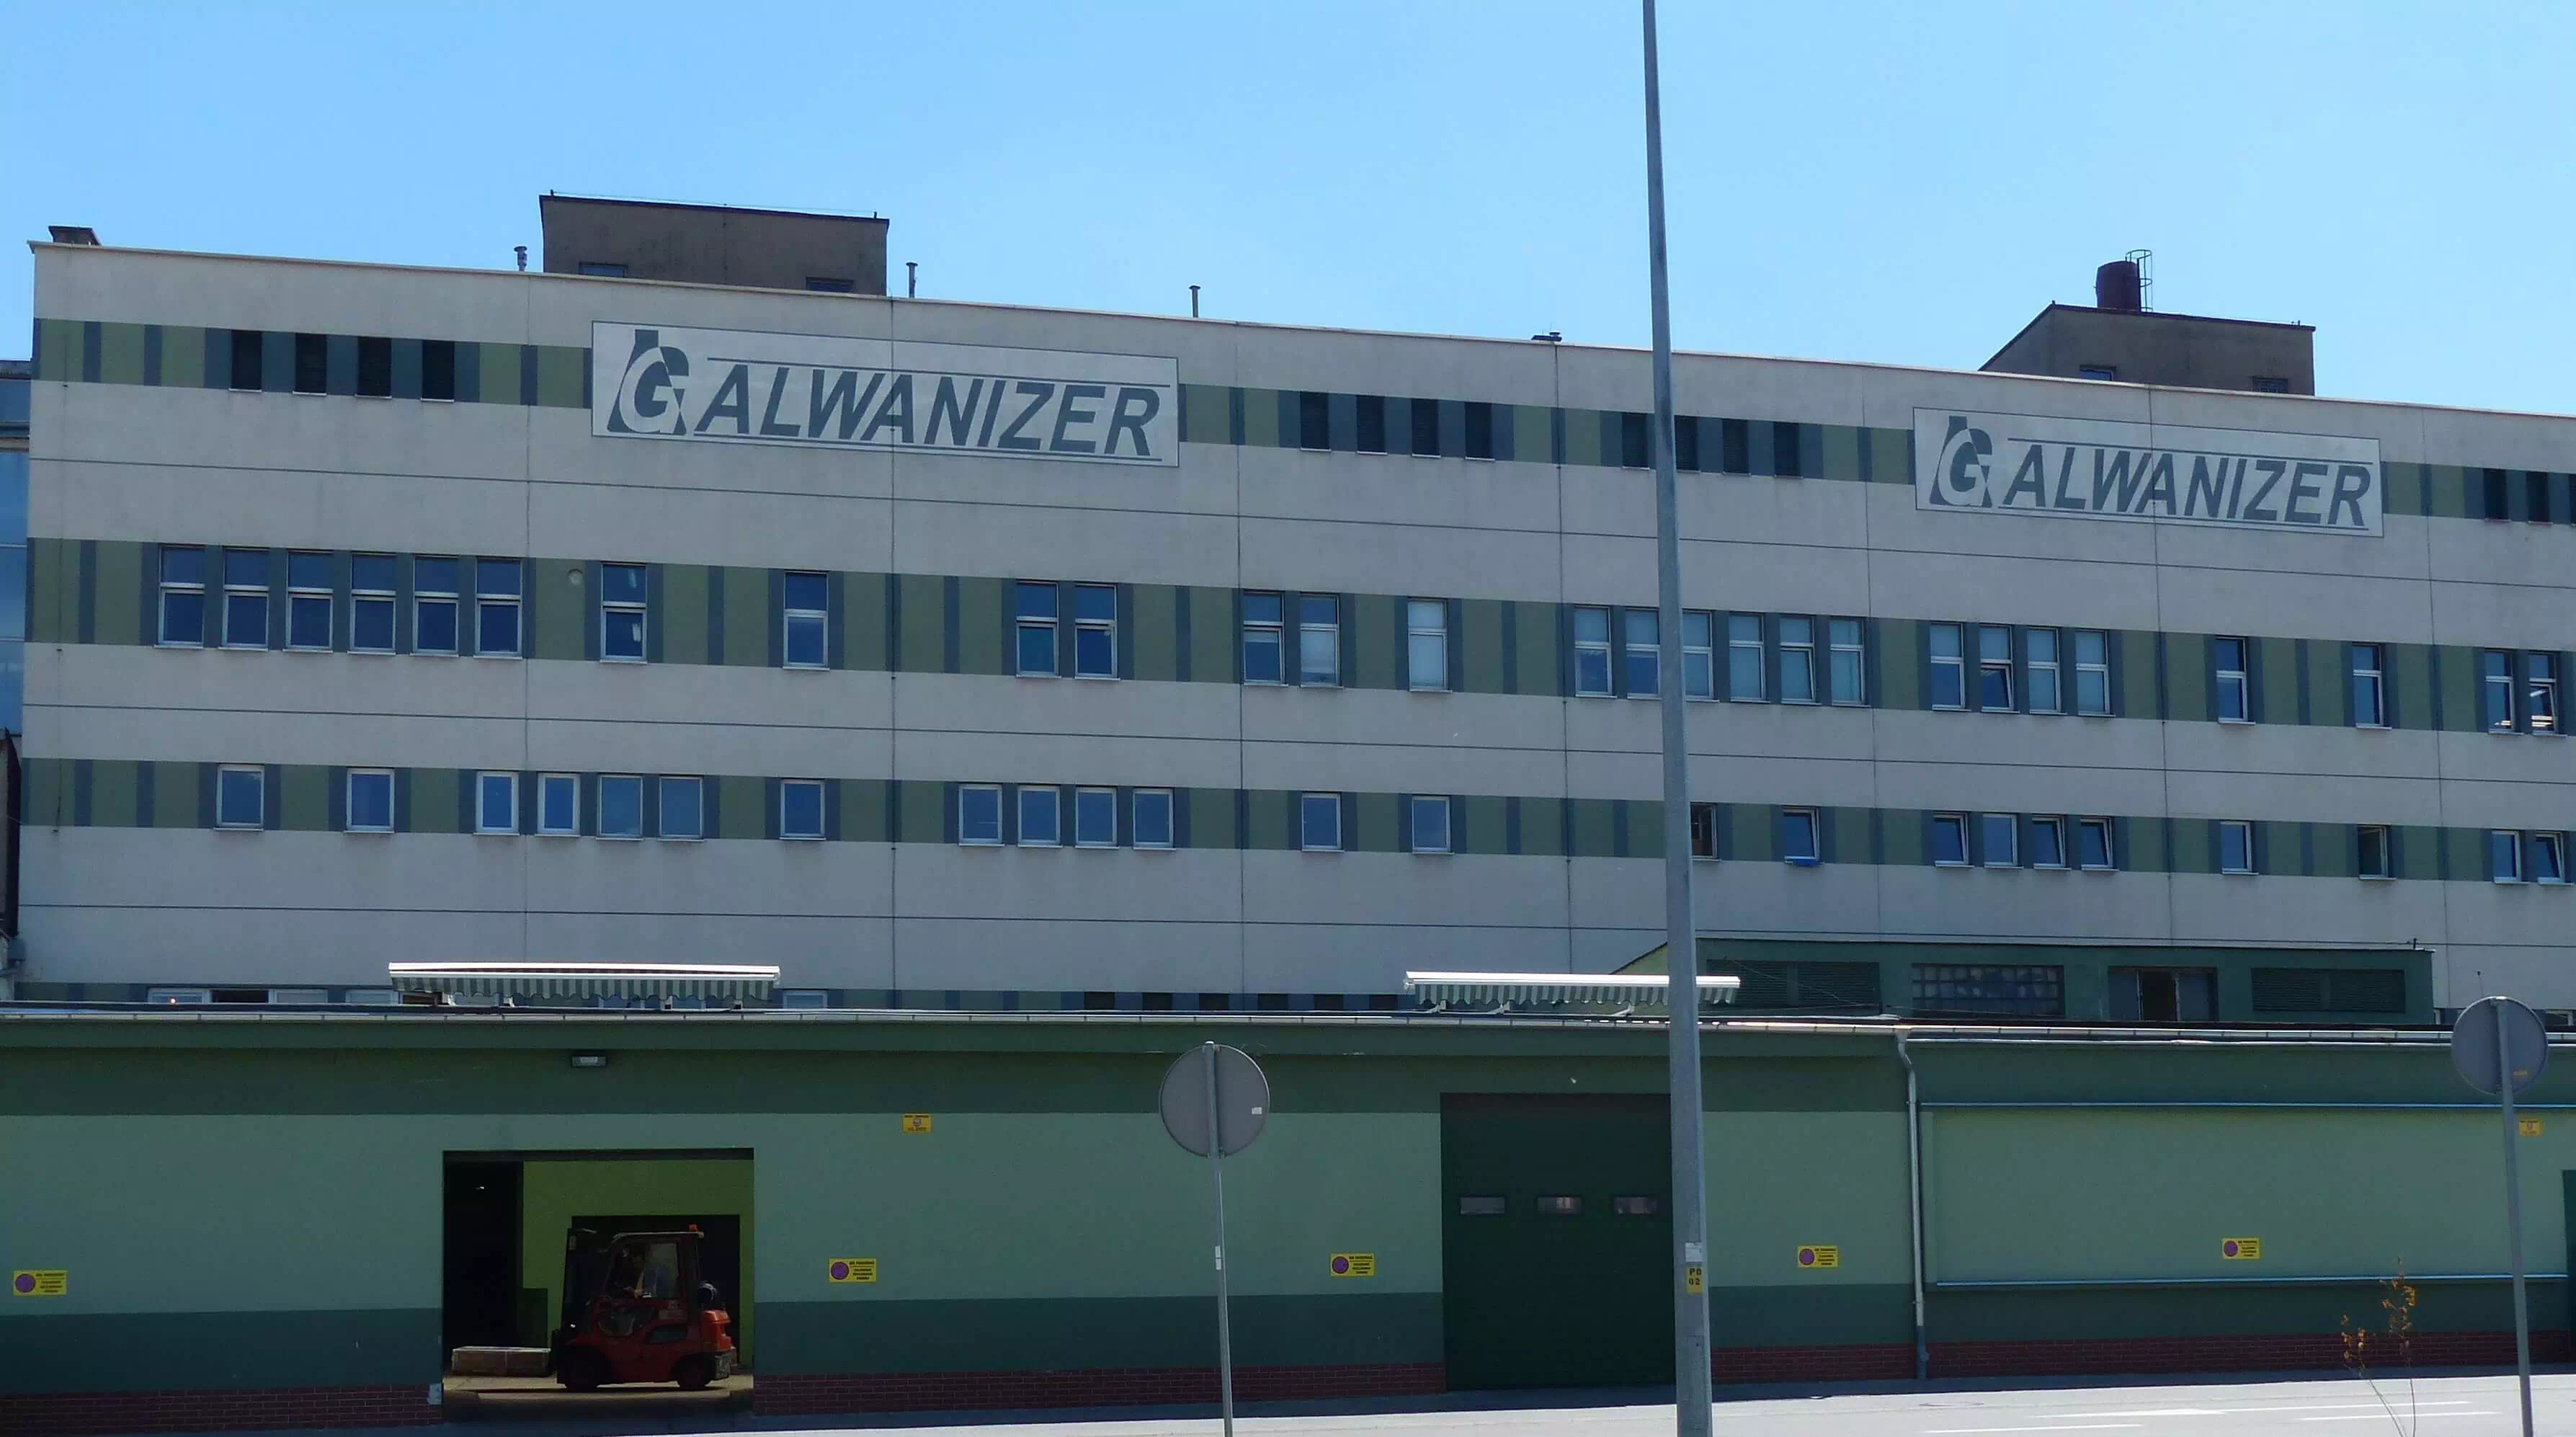 Galwanizer siedziba firmy